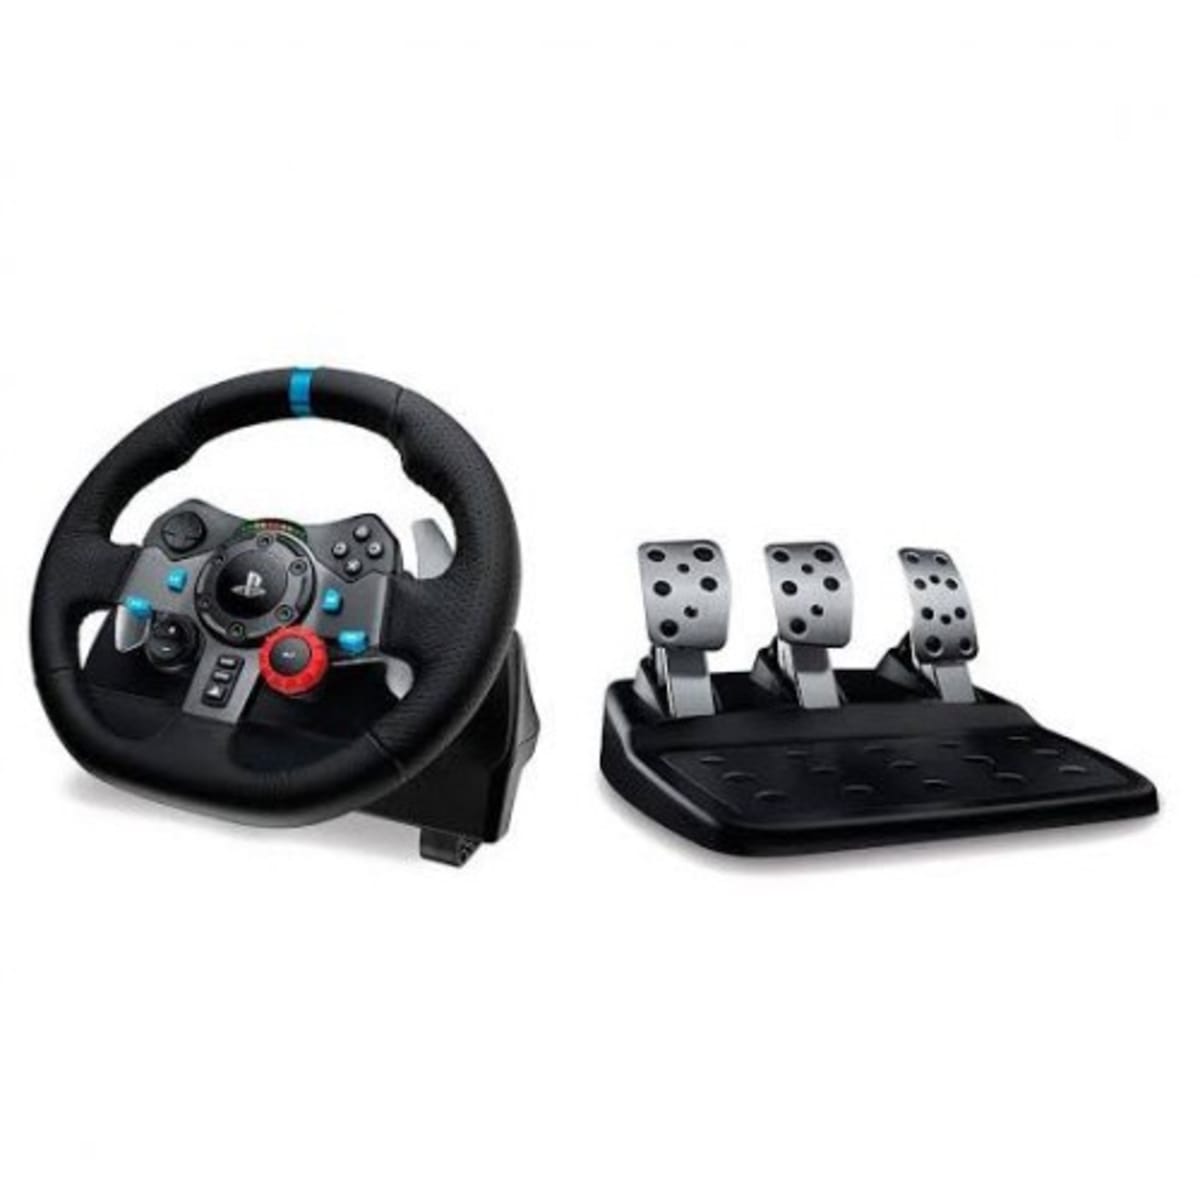 Logitech Driving Force Racing Wheel Pedals | Konga Shopping